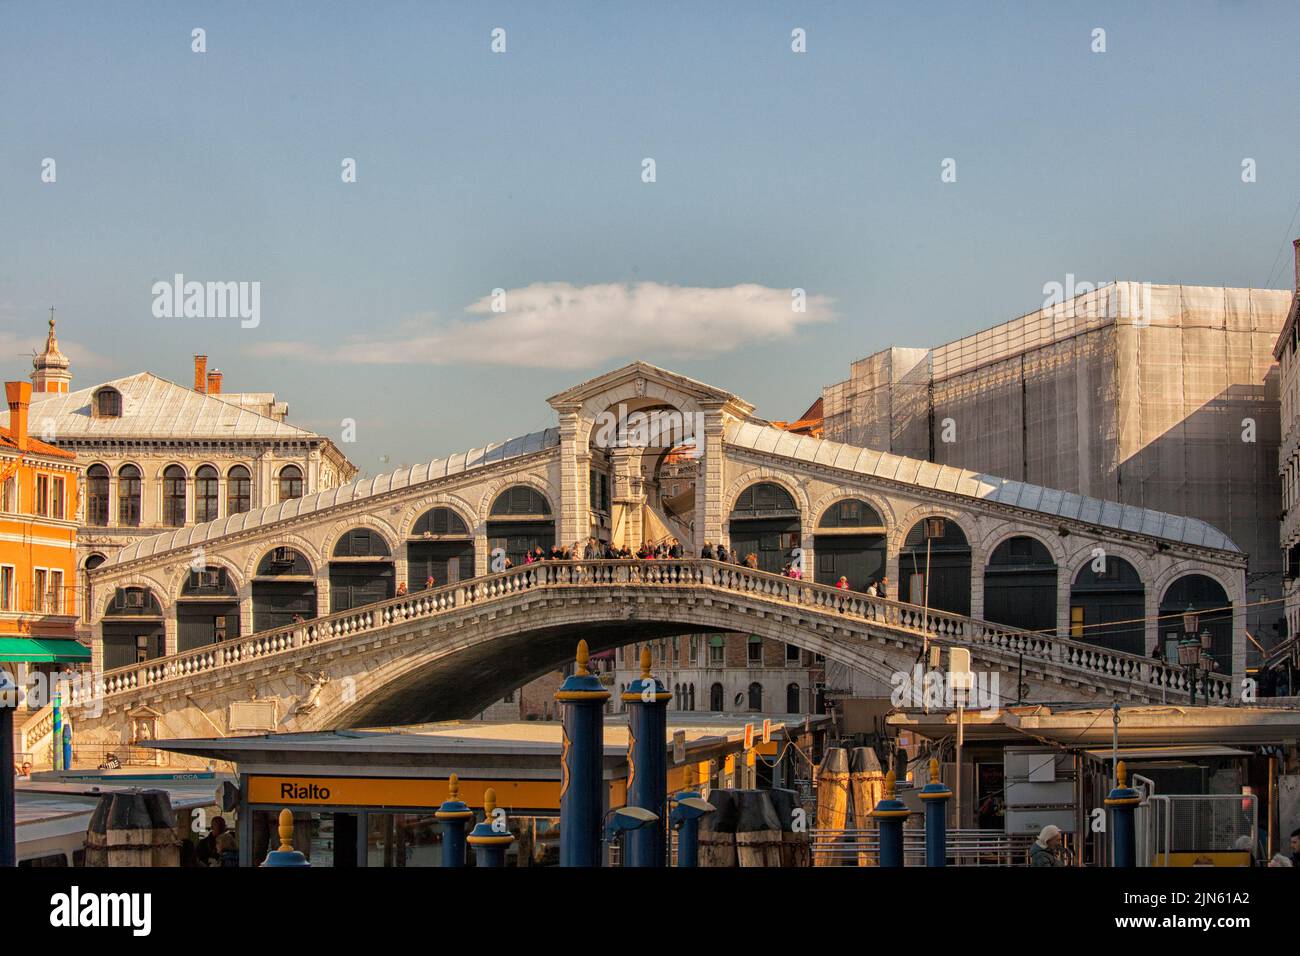 Rialto bridge with transportation stations in Venice, Italy.  Rialto Bridge is a stone arch bridge in Venice Stock Photo